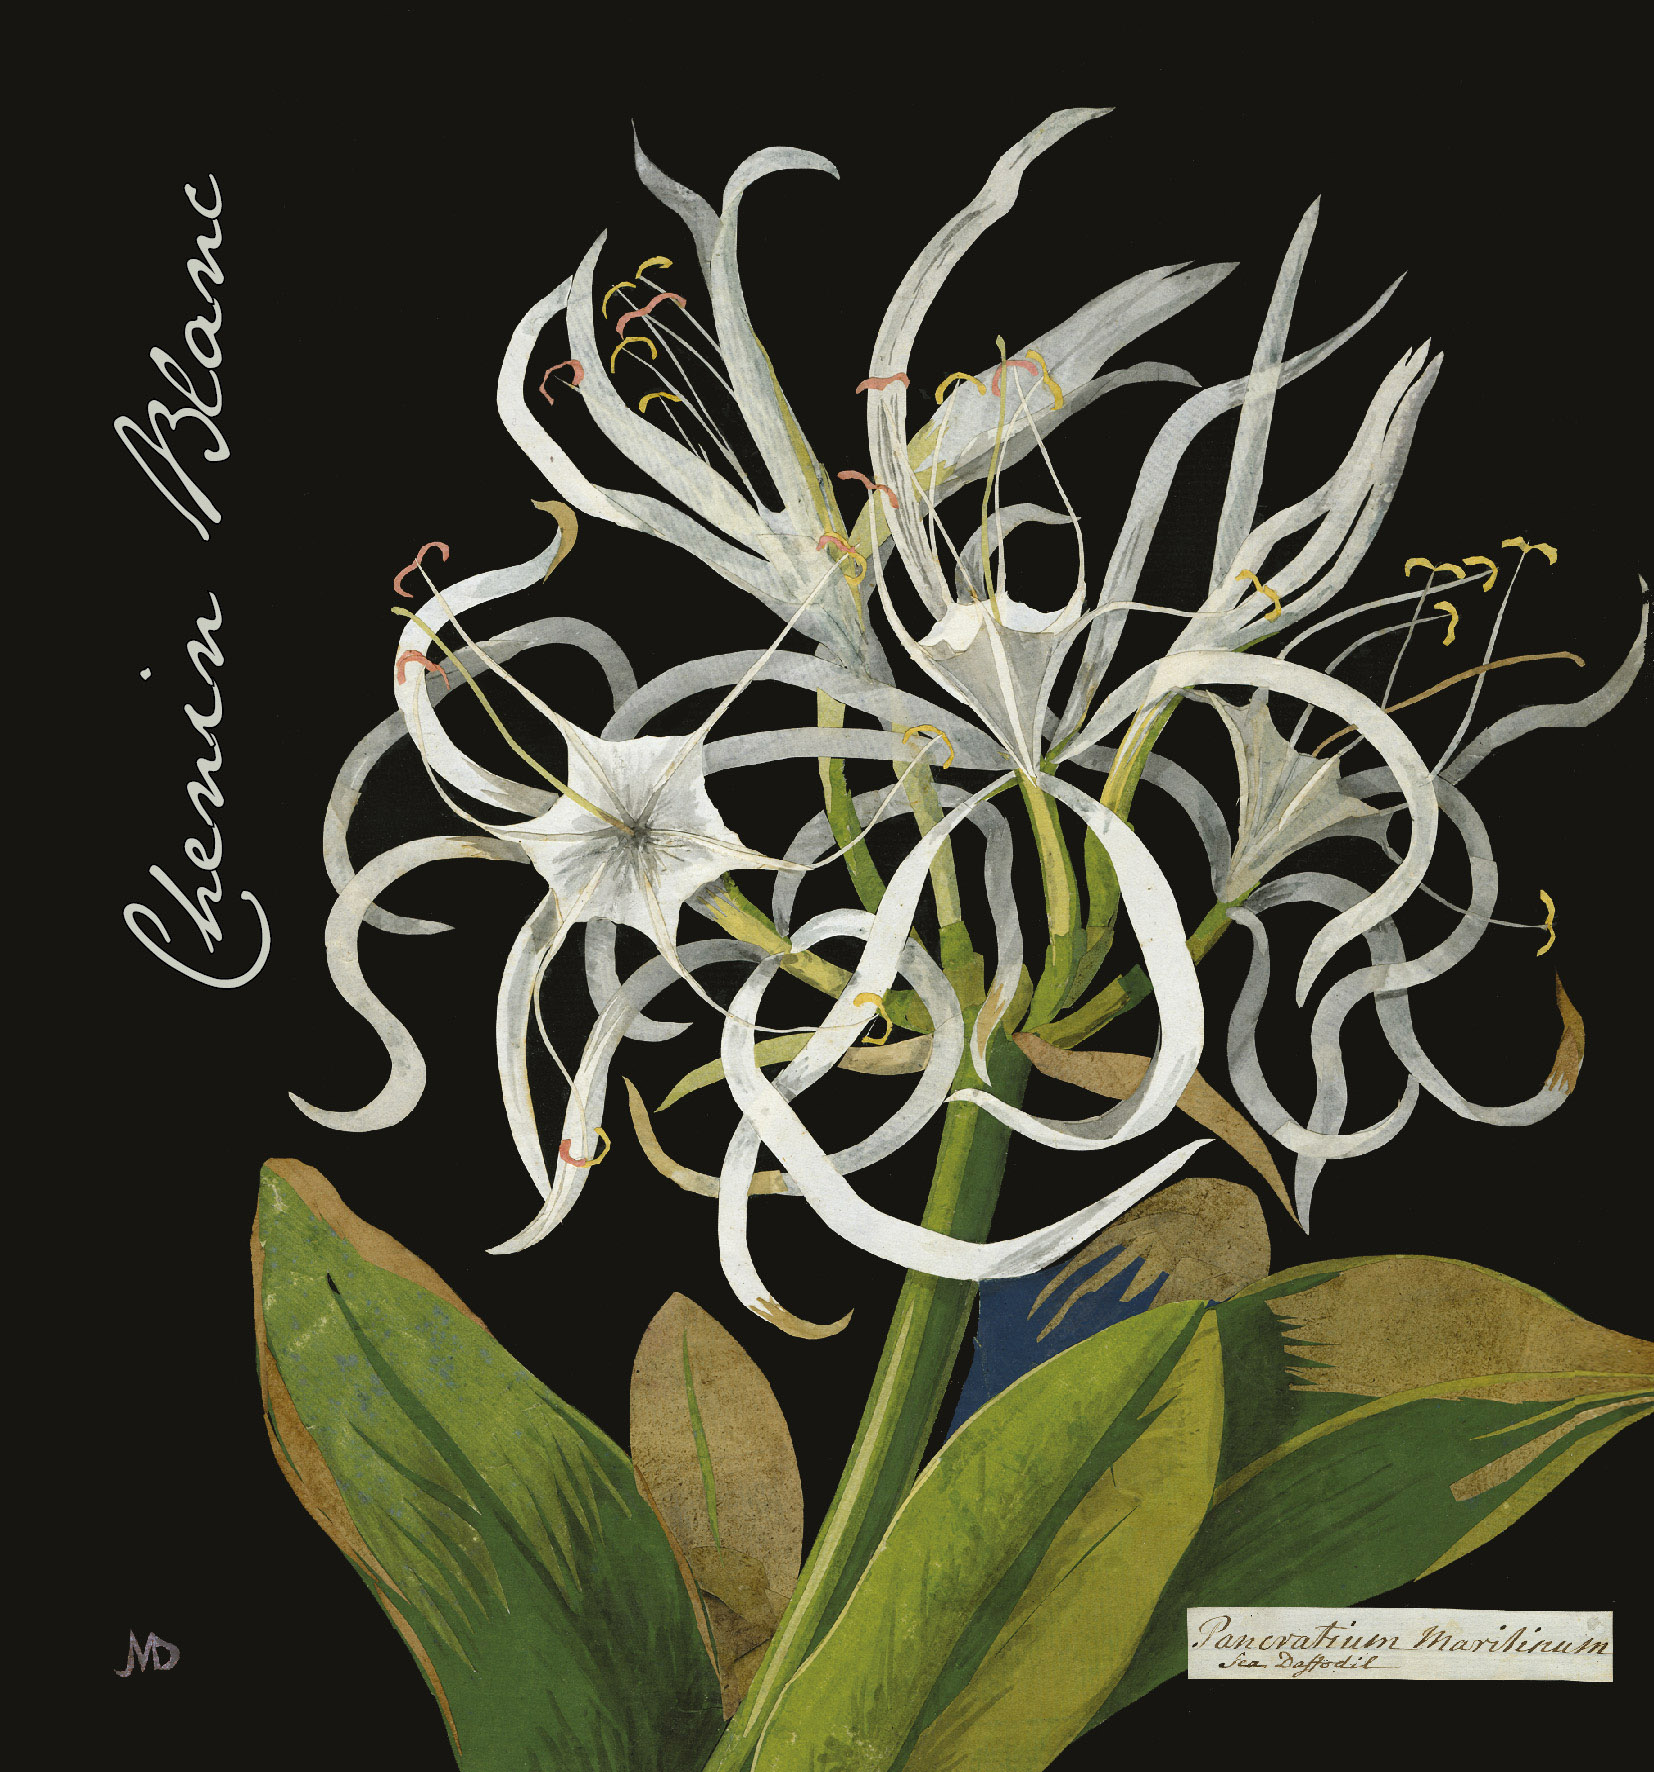 Botanica - Mary Delany - Chenin Blanc label